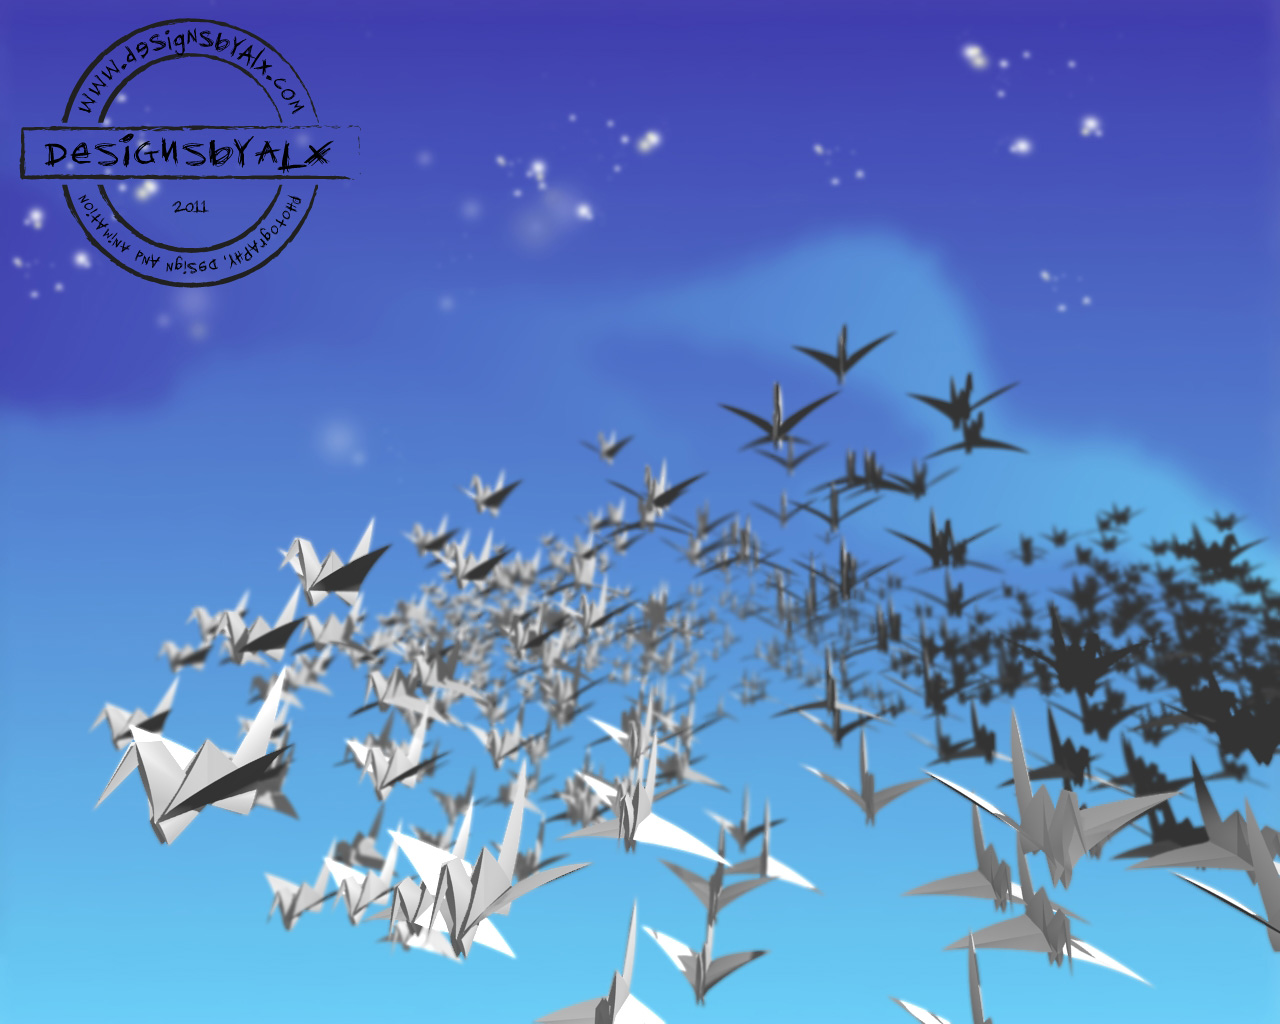 Flock_cranes byALX.jpg